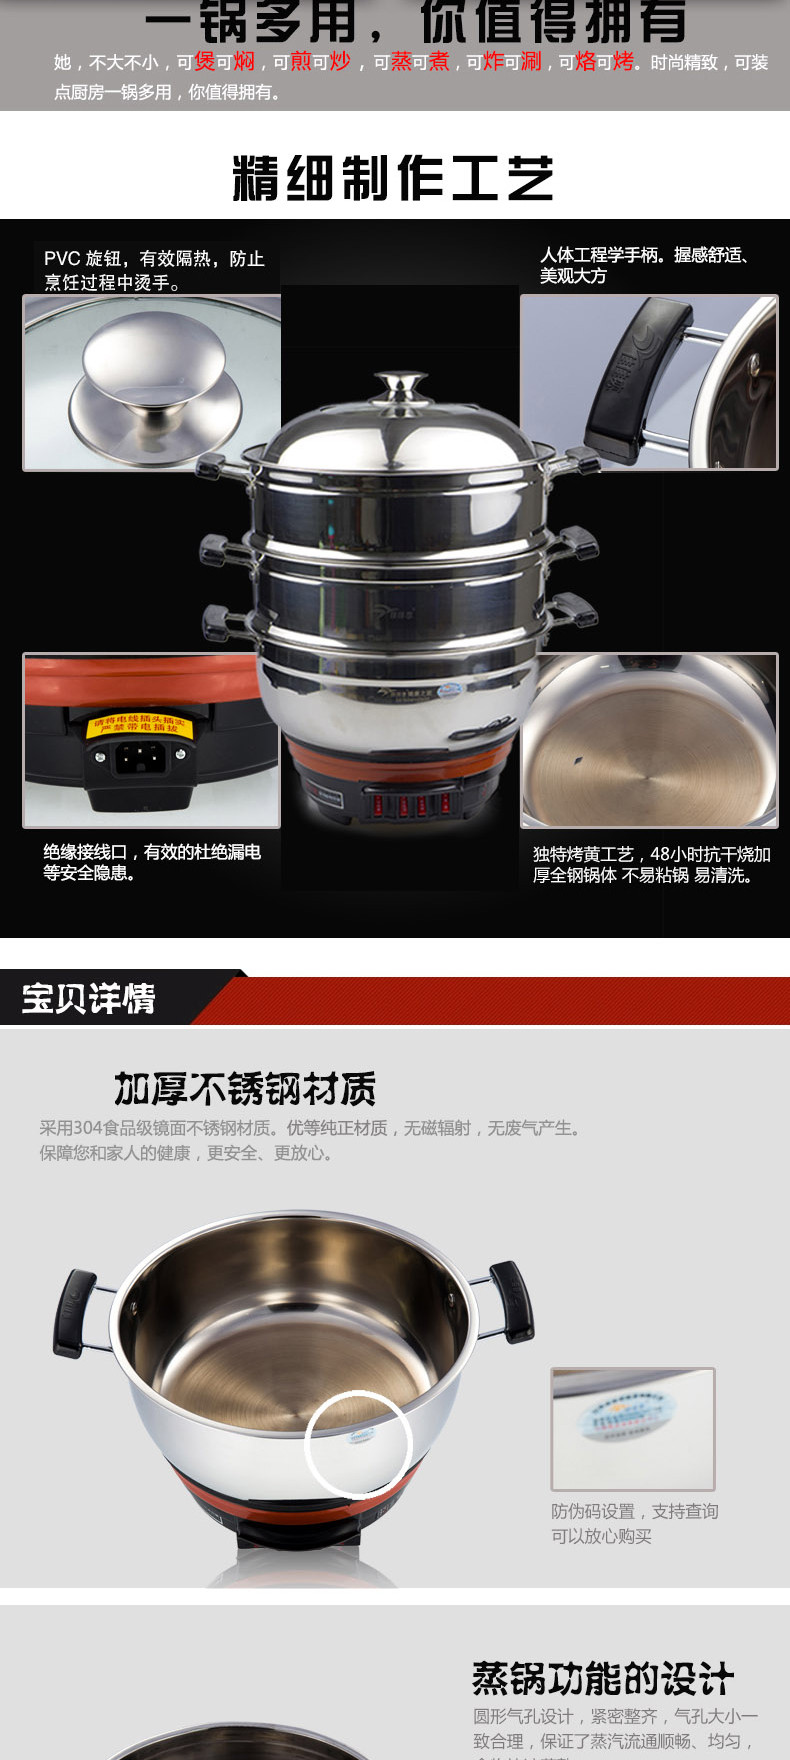 佳佳恋多功能双格电热锅30CM  JJLDG-30 4.5L 食品级不锈钢材质中国质造烧水壶食品级